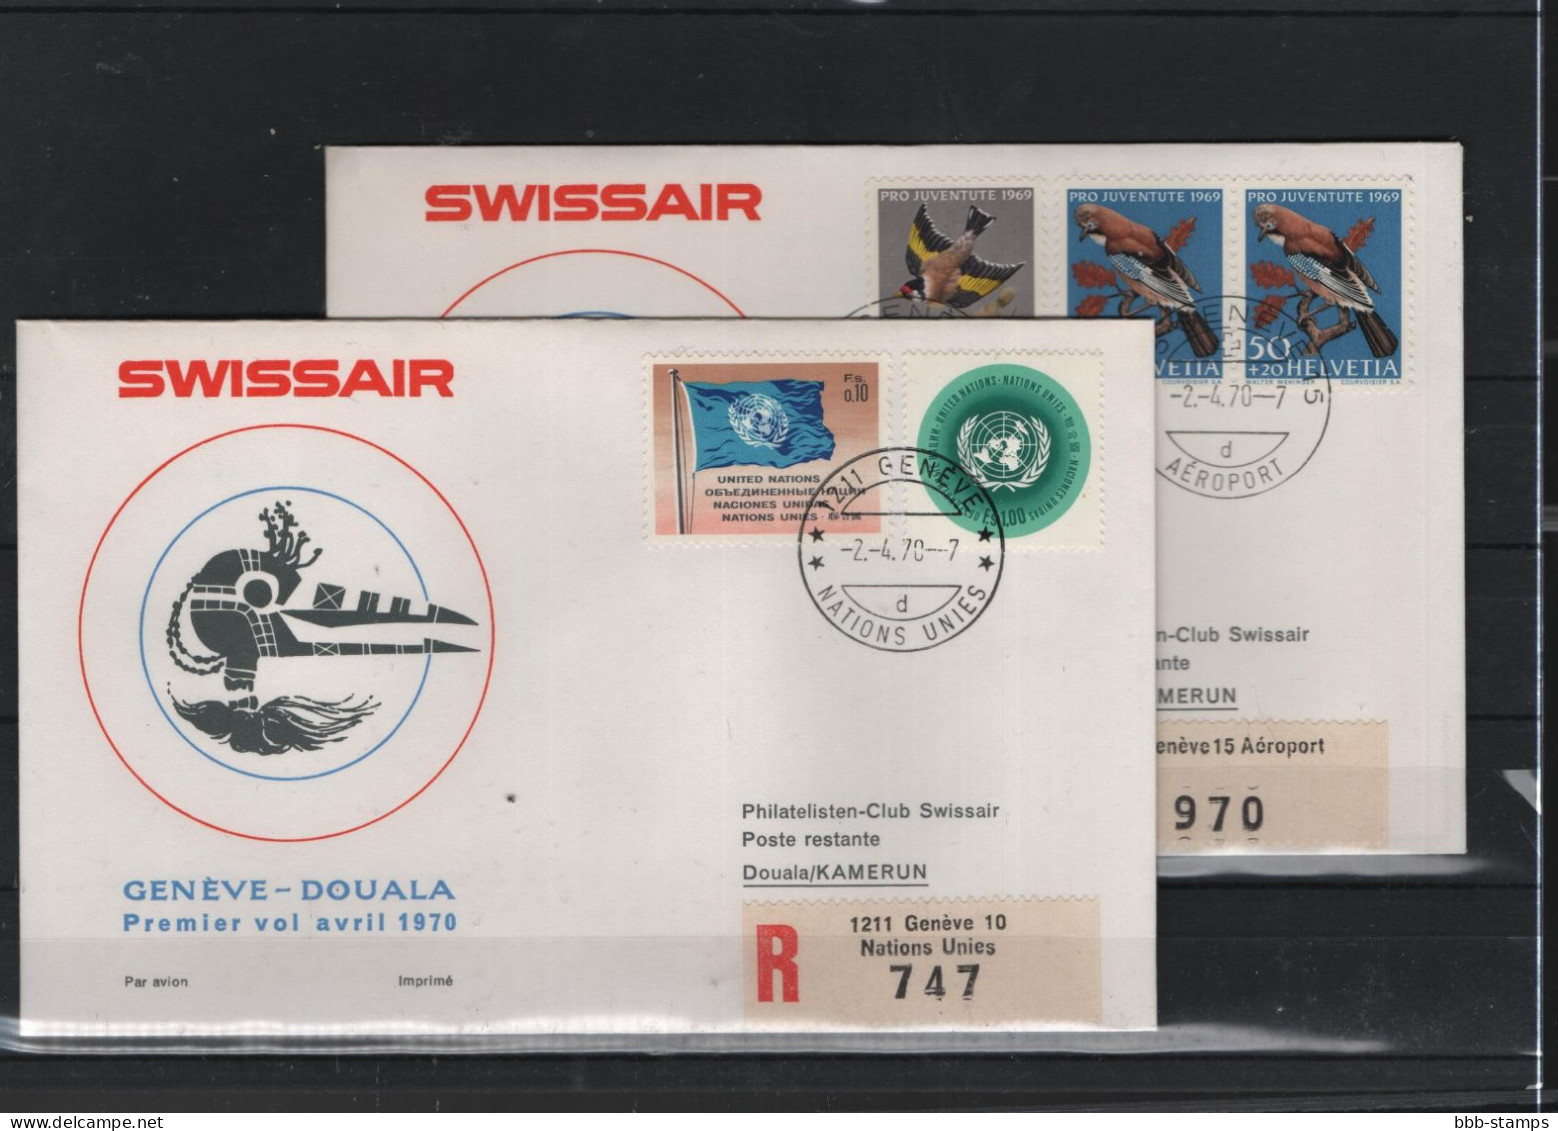 Schweiz Luftpost FFC Swissair 2.4.1970 Genf - Duala VV - Erst- U. Sonderflugbriefe